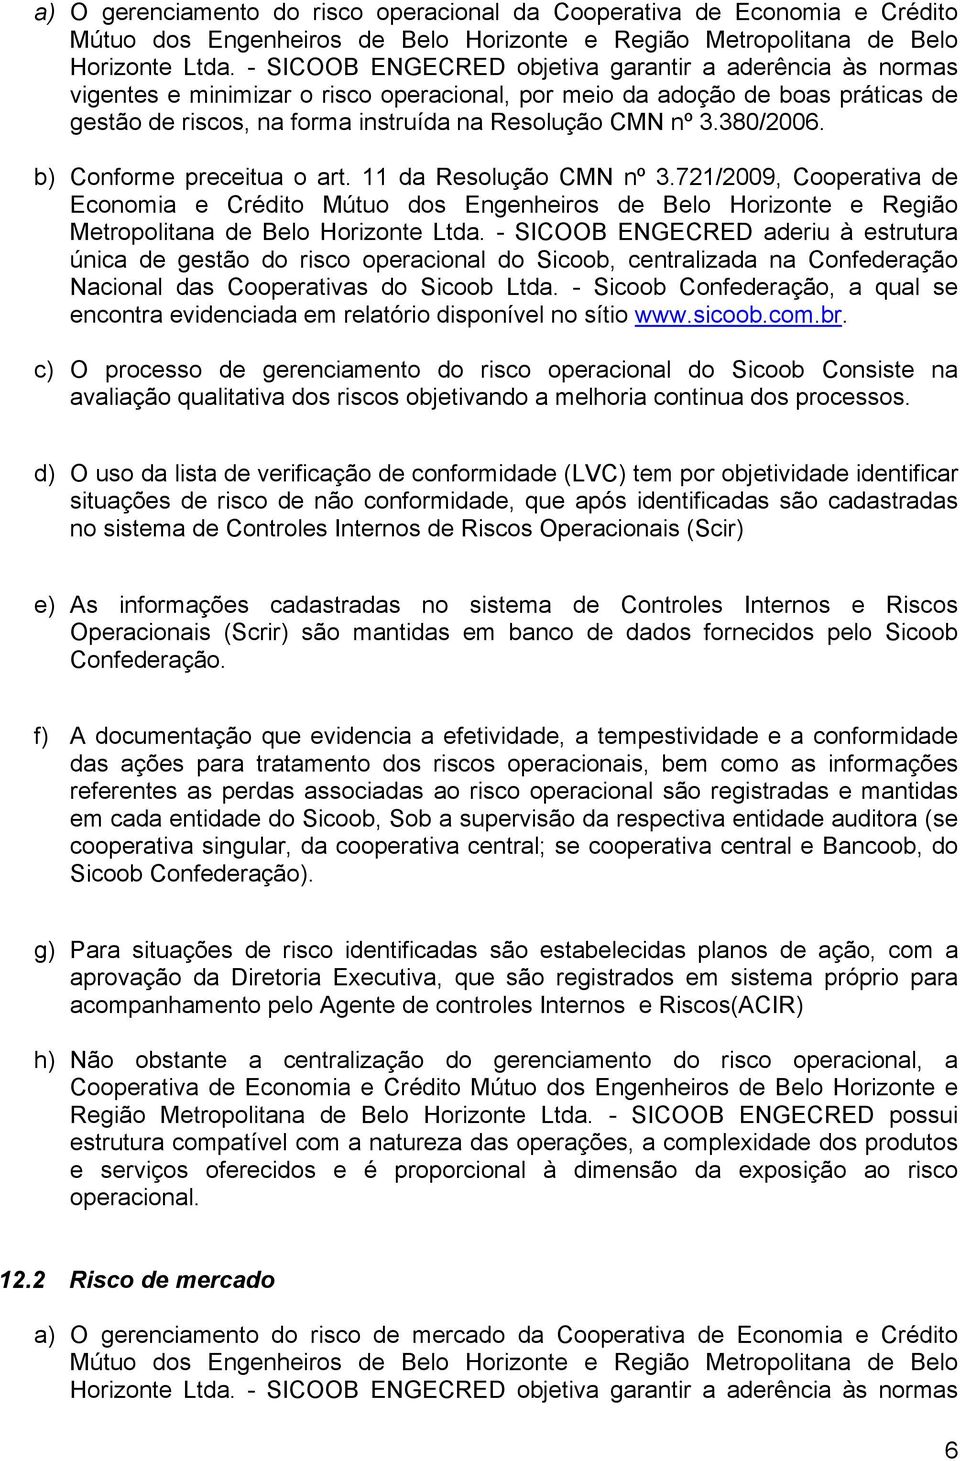 380/2006. b) Conforme preceitua o art. 11 da Resolução CMN nº 3.721/2009, Cooperativa de Economia e Crédito Mútuo dos Engenheiros de Belo Horizonte e Região Metropolitana de Belo Horizonte Ltda.